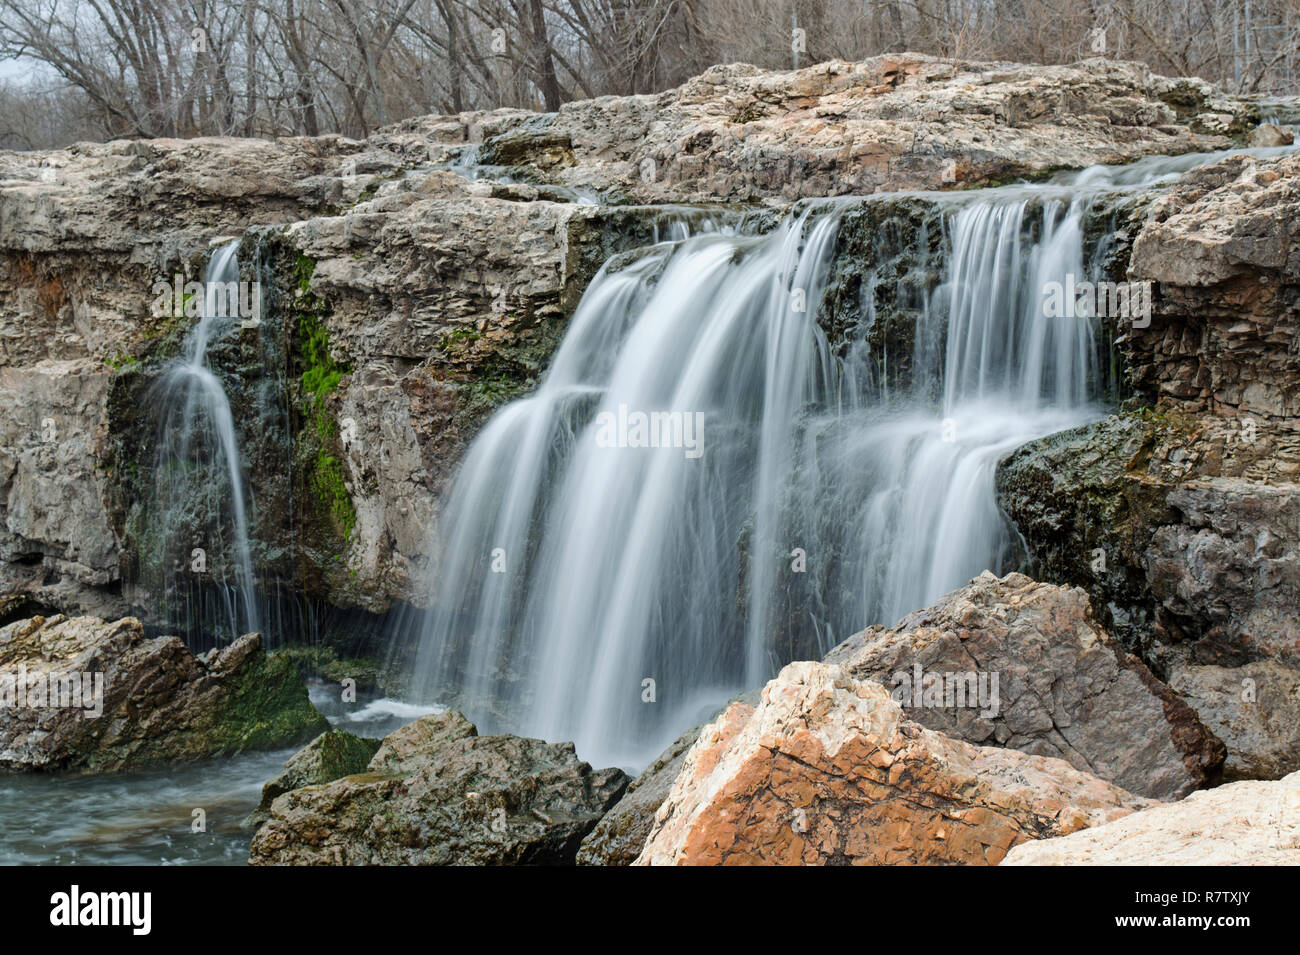 Wasserfall unter Felsbrocken auf einen warmen Winter Tag bildet eine malerische Aussicht Stockfoto